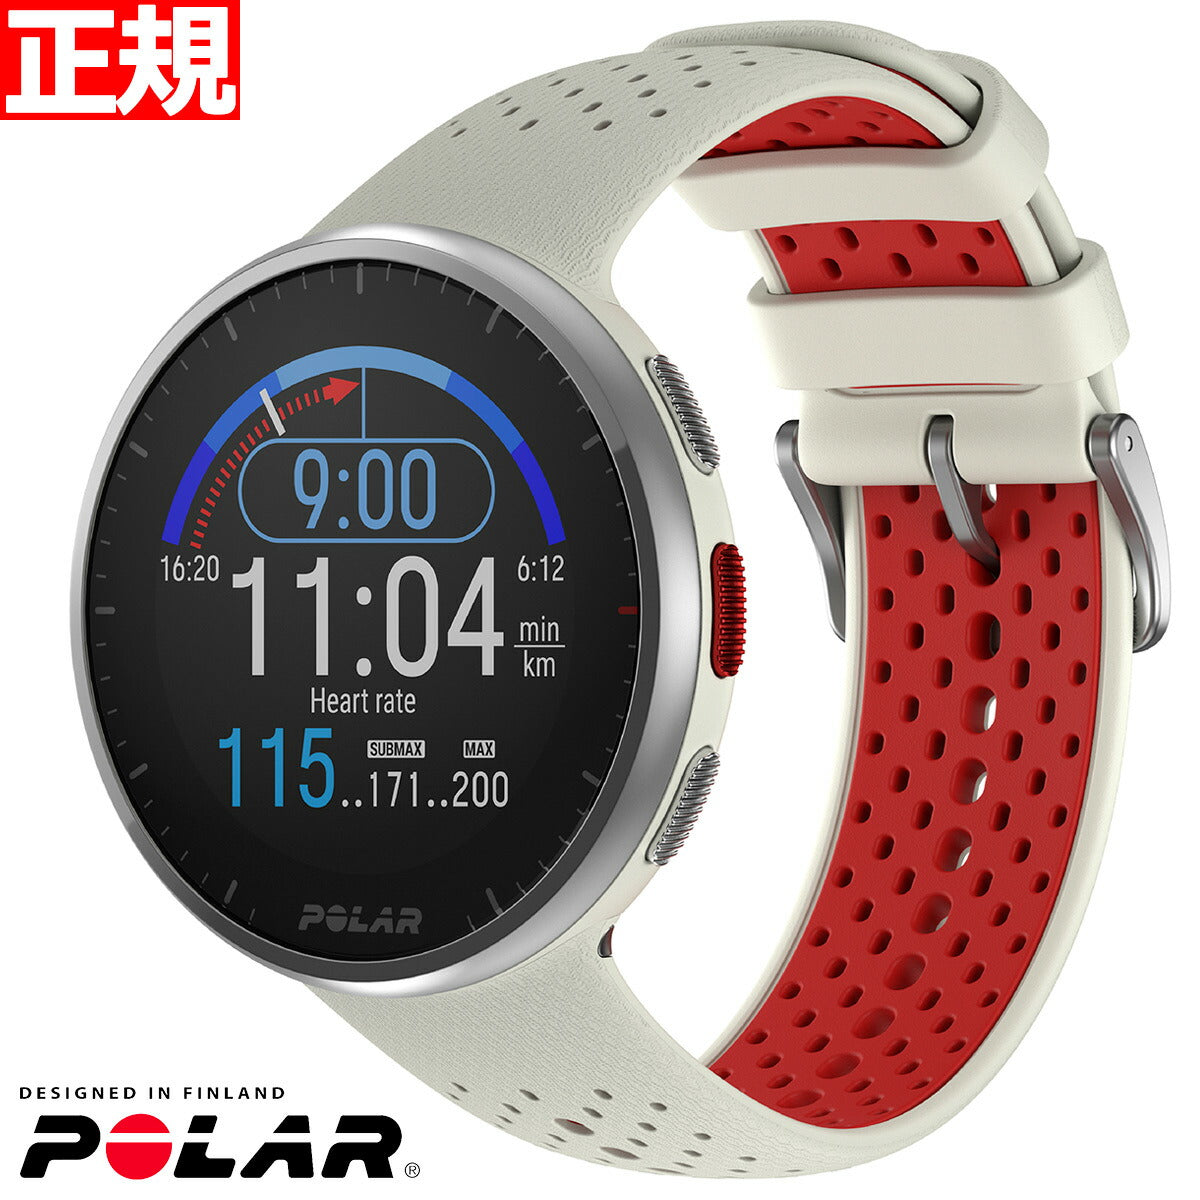 0円 価格 POLAR ポラール M200 GPS Running Watch ランニング ウォッチ 心拍センサー付き ブラック 並行輸入品